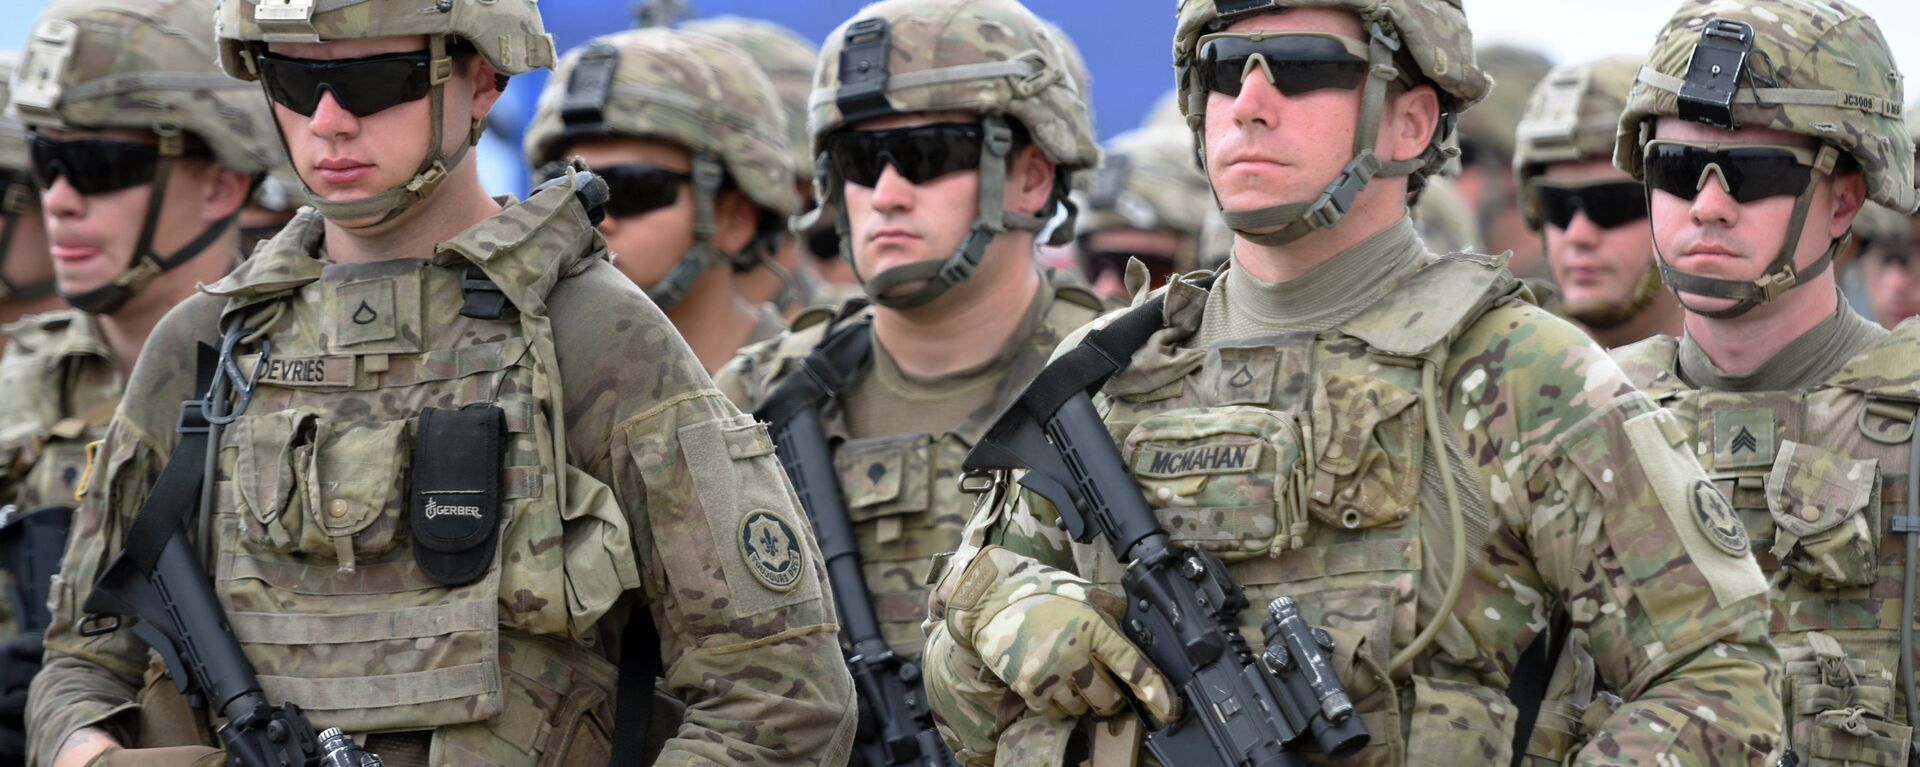 Američki vojnici na vojnim vežbama Dostojni partner 2018 u okviru NATO-a u Gruziji - Sputnik Srbija, 1920, 14.04.2021